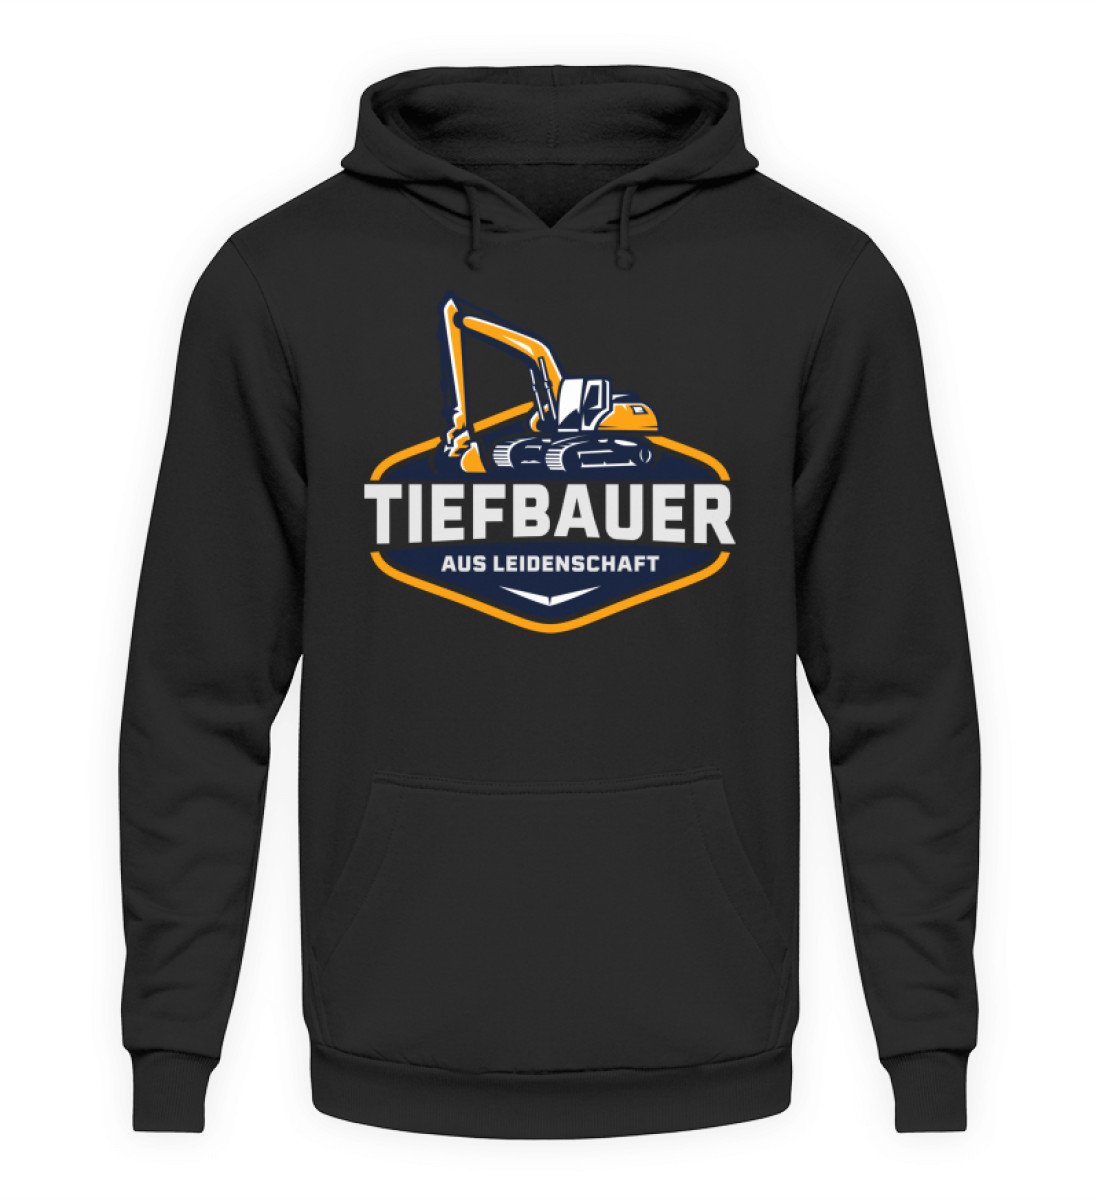 Tiefbauer - Handwerker Hoodie